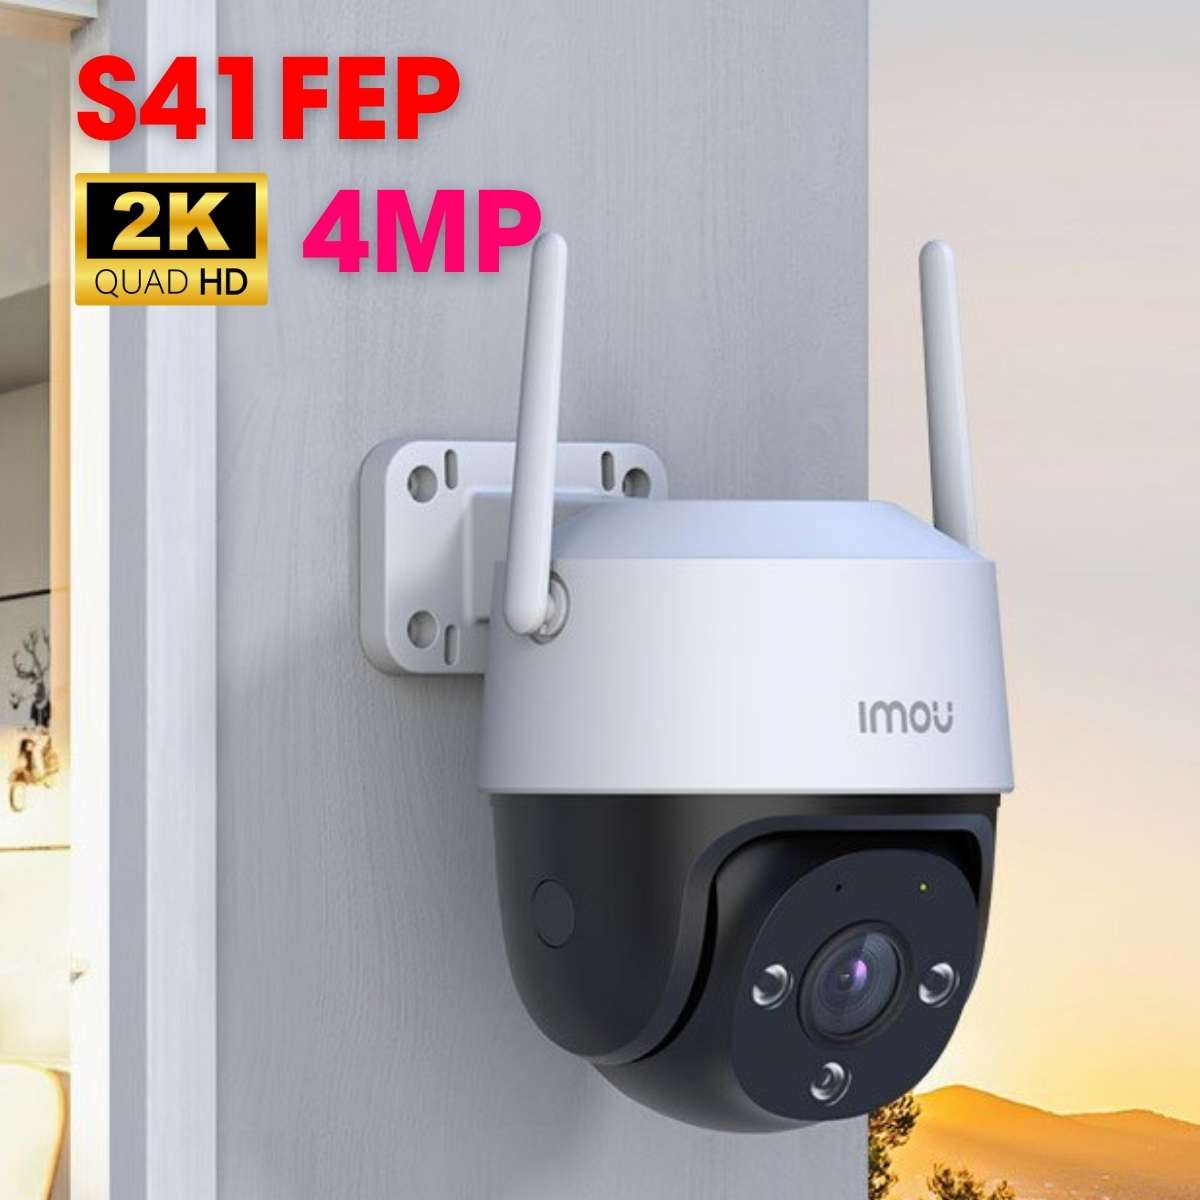 Camera wifi ngoài trời không dây IMOU IPC-S41FEP 4MP 2K tích hợp Mic và loa, phát hiện con người, còi báo động 110dB